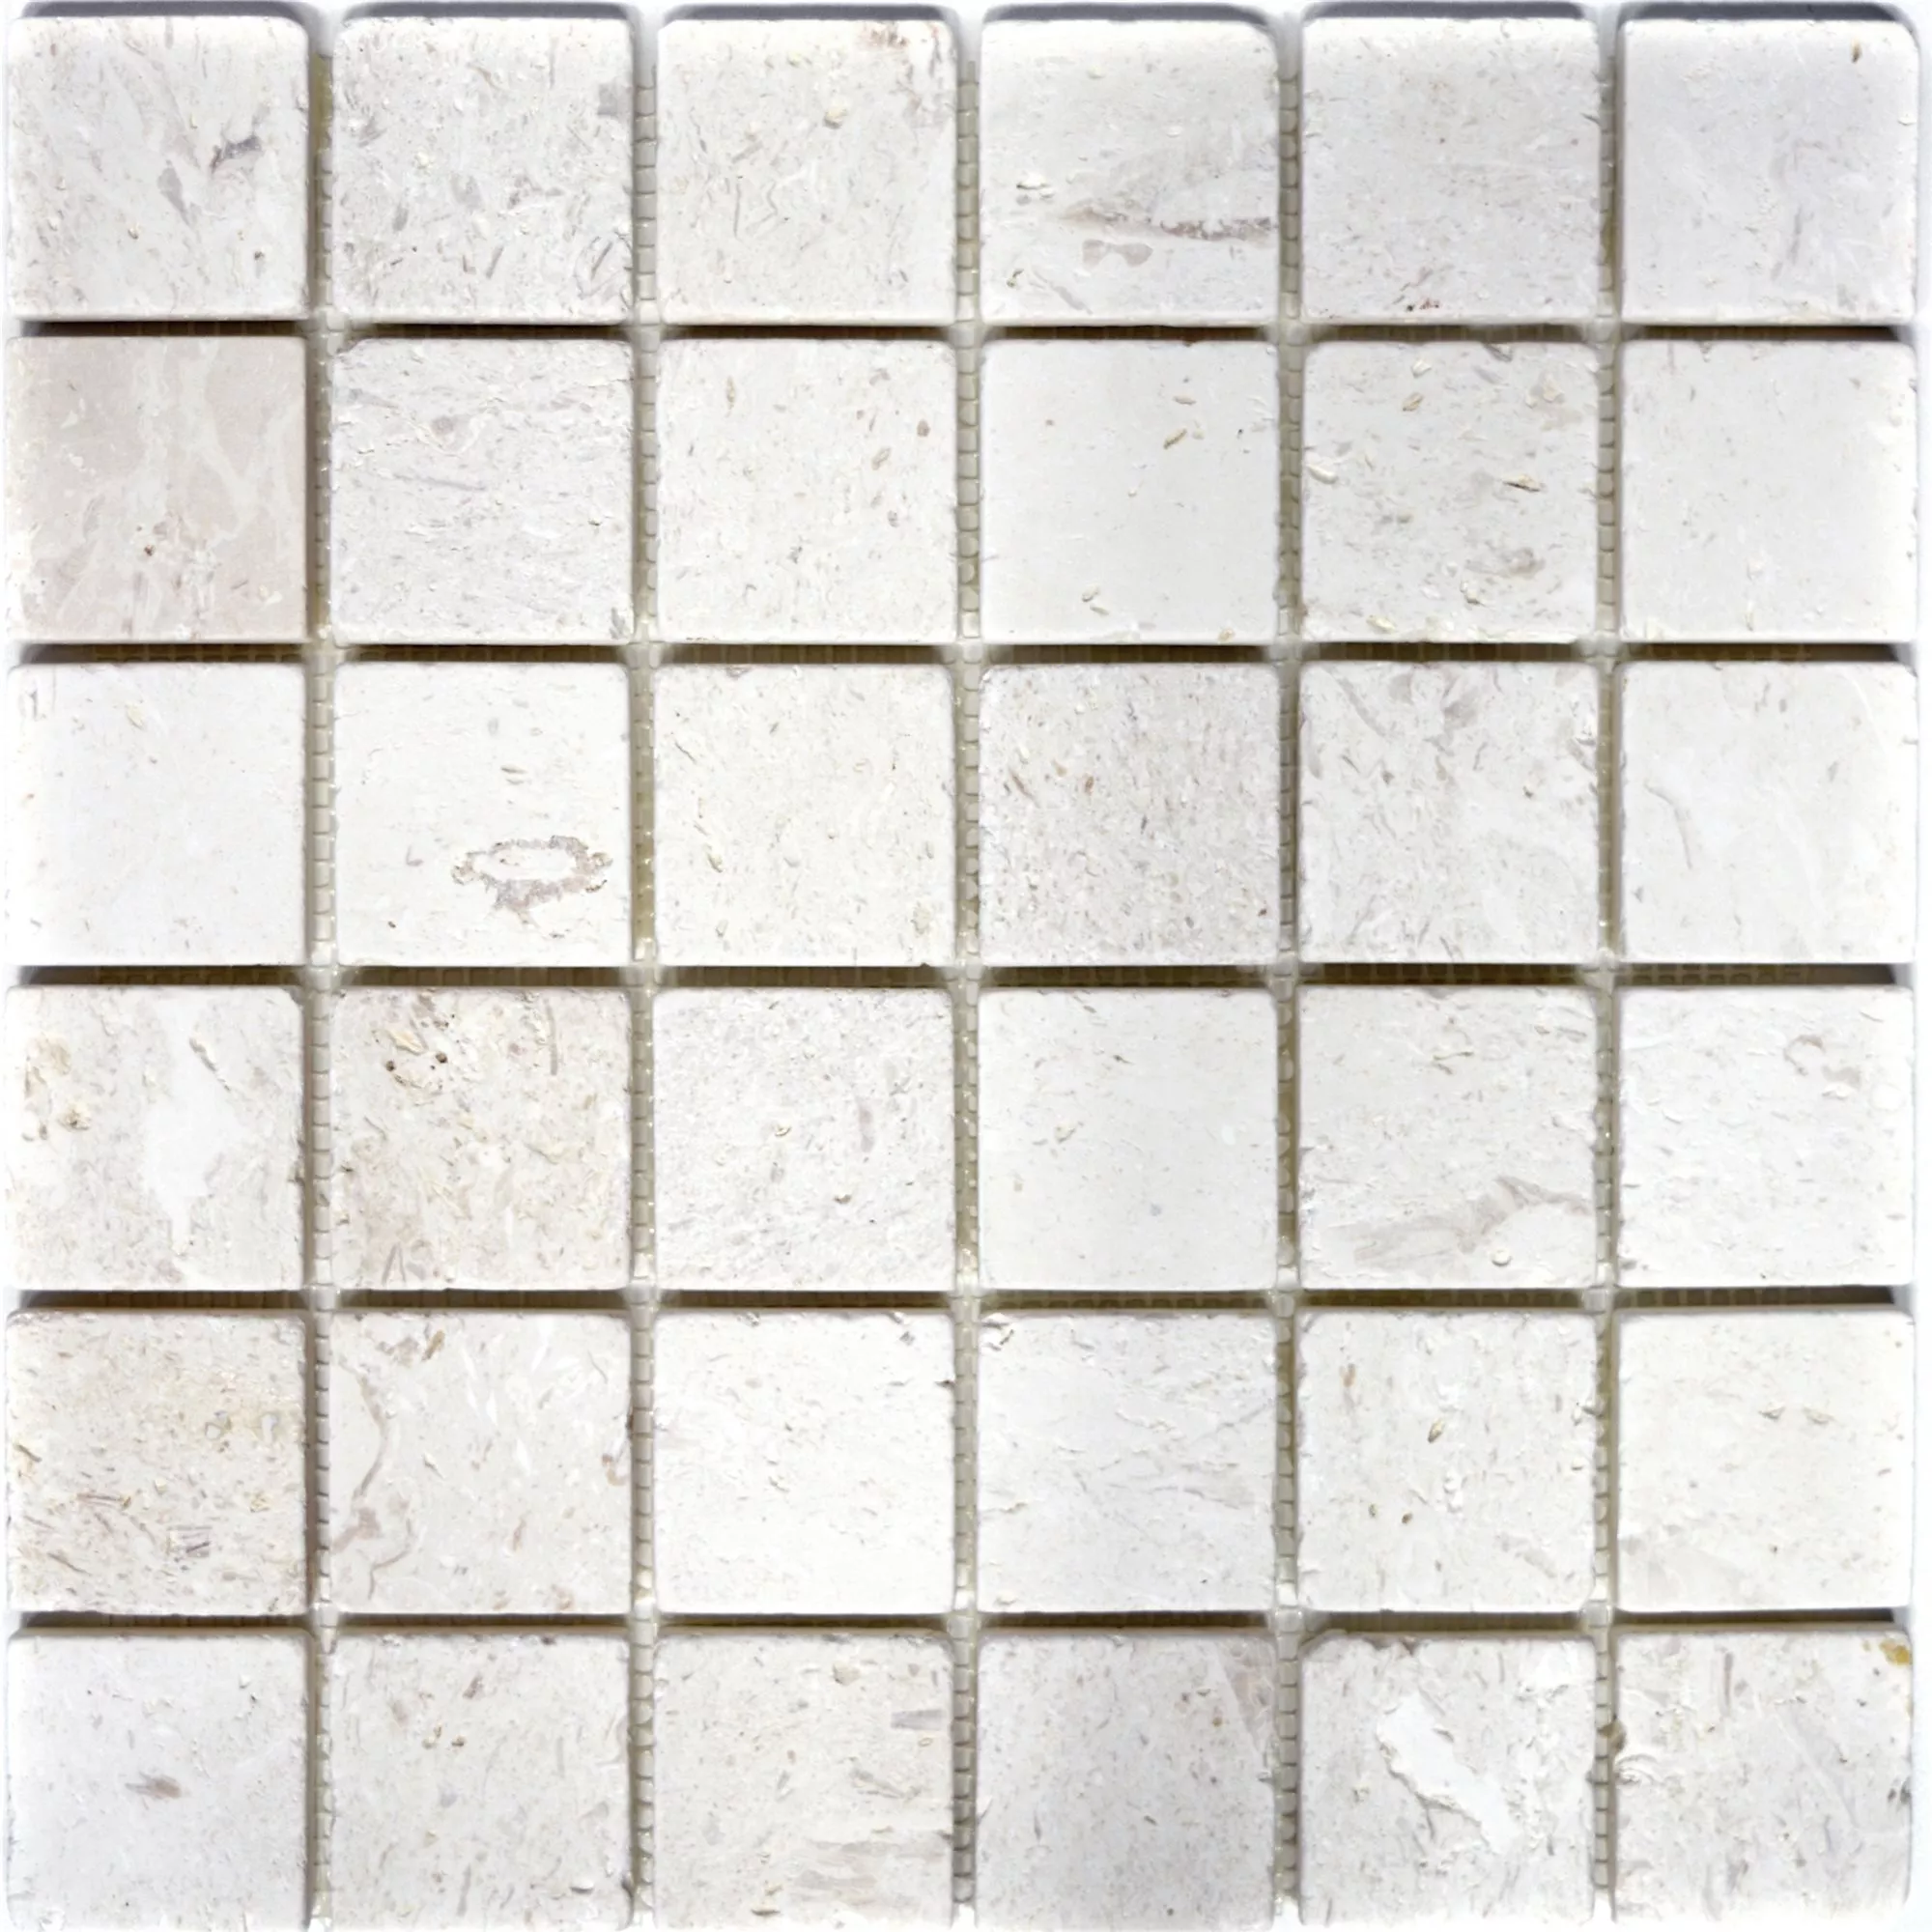 Campione Mosaico Calcare Allerona Bianco 48